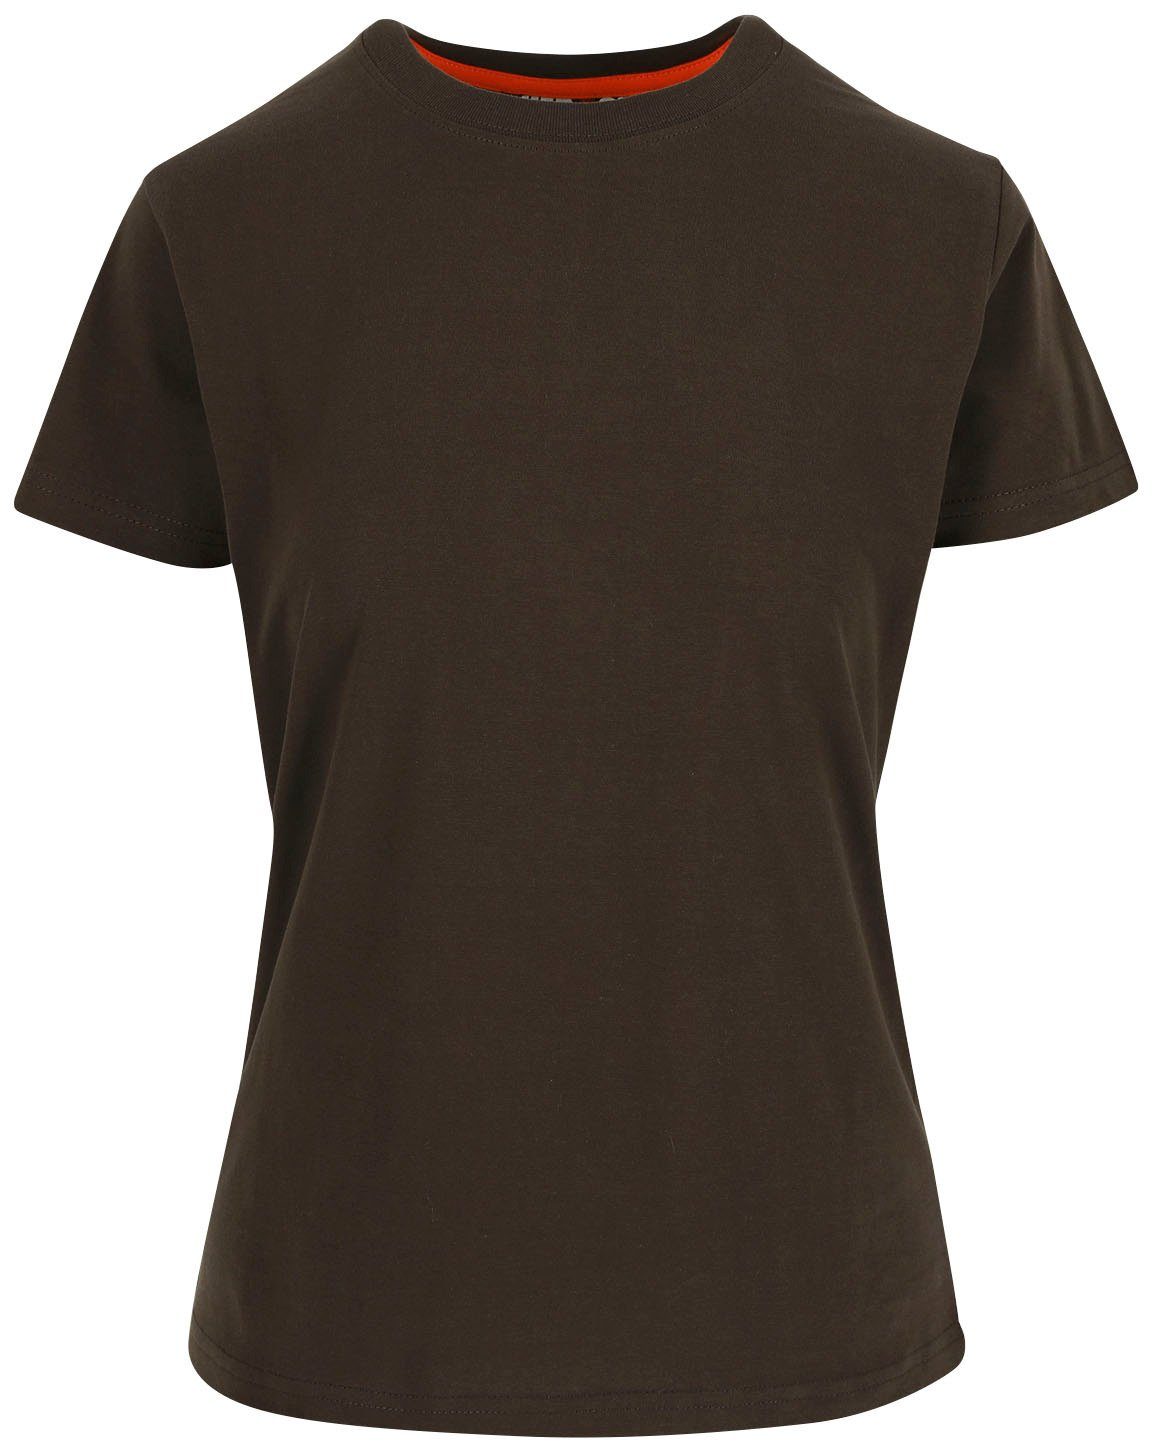 Herock T-Shirt braun Kurzärmlig hintere Schlaufe, Figurbetont, angenehmes T-Shirt Damen 1 Epona Tragegefühl